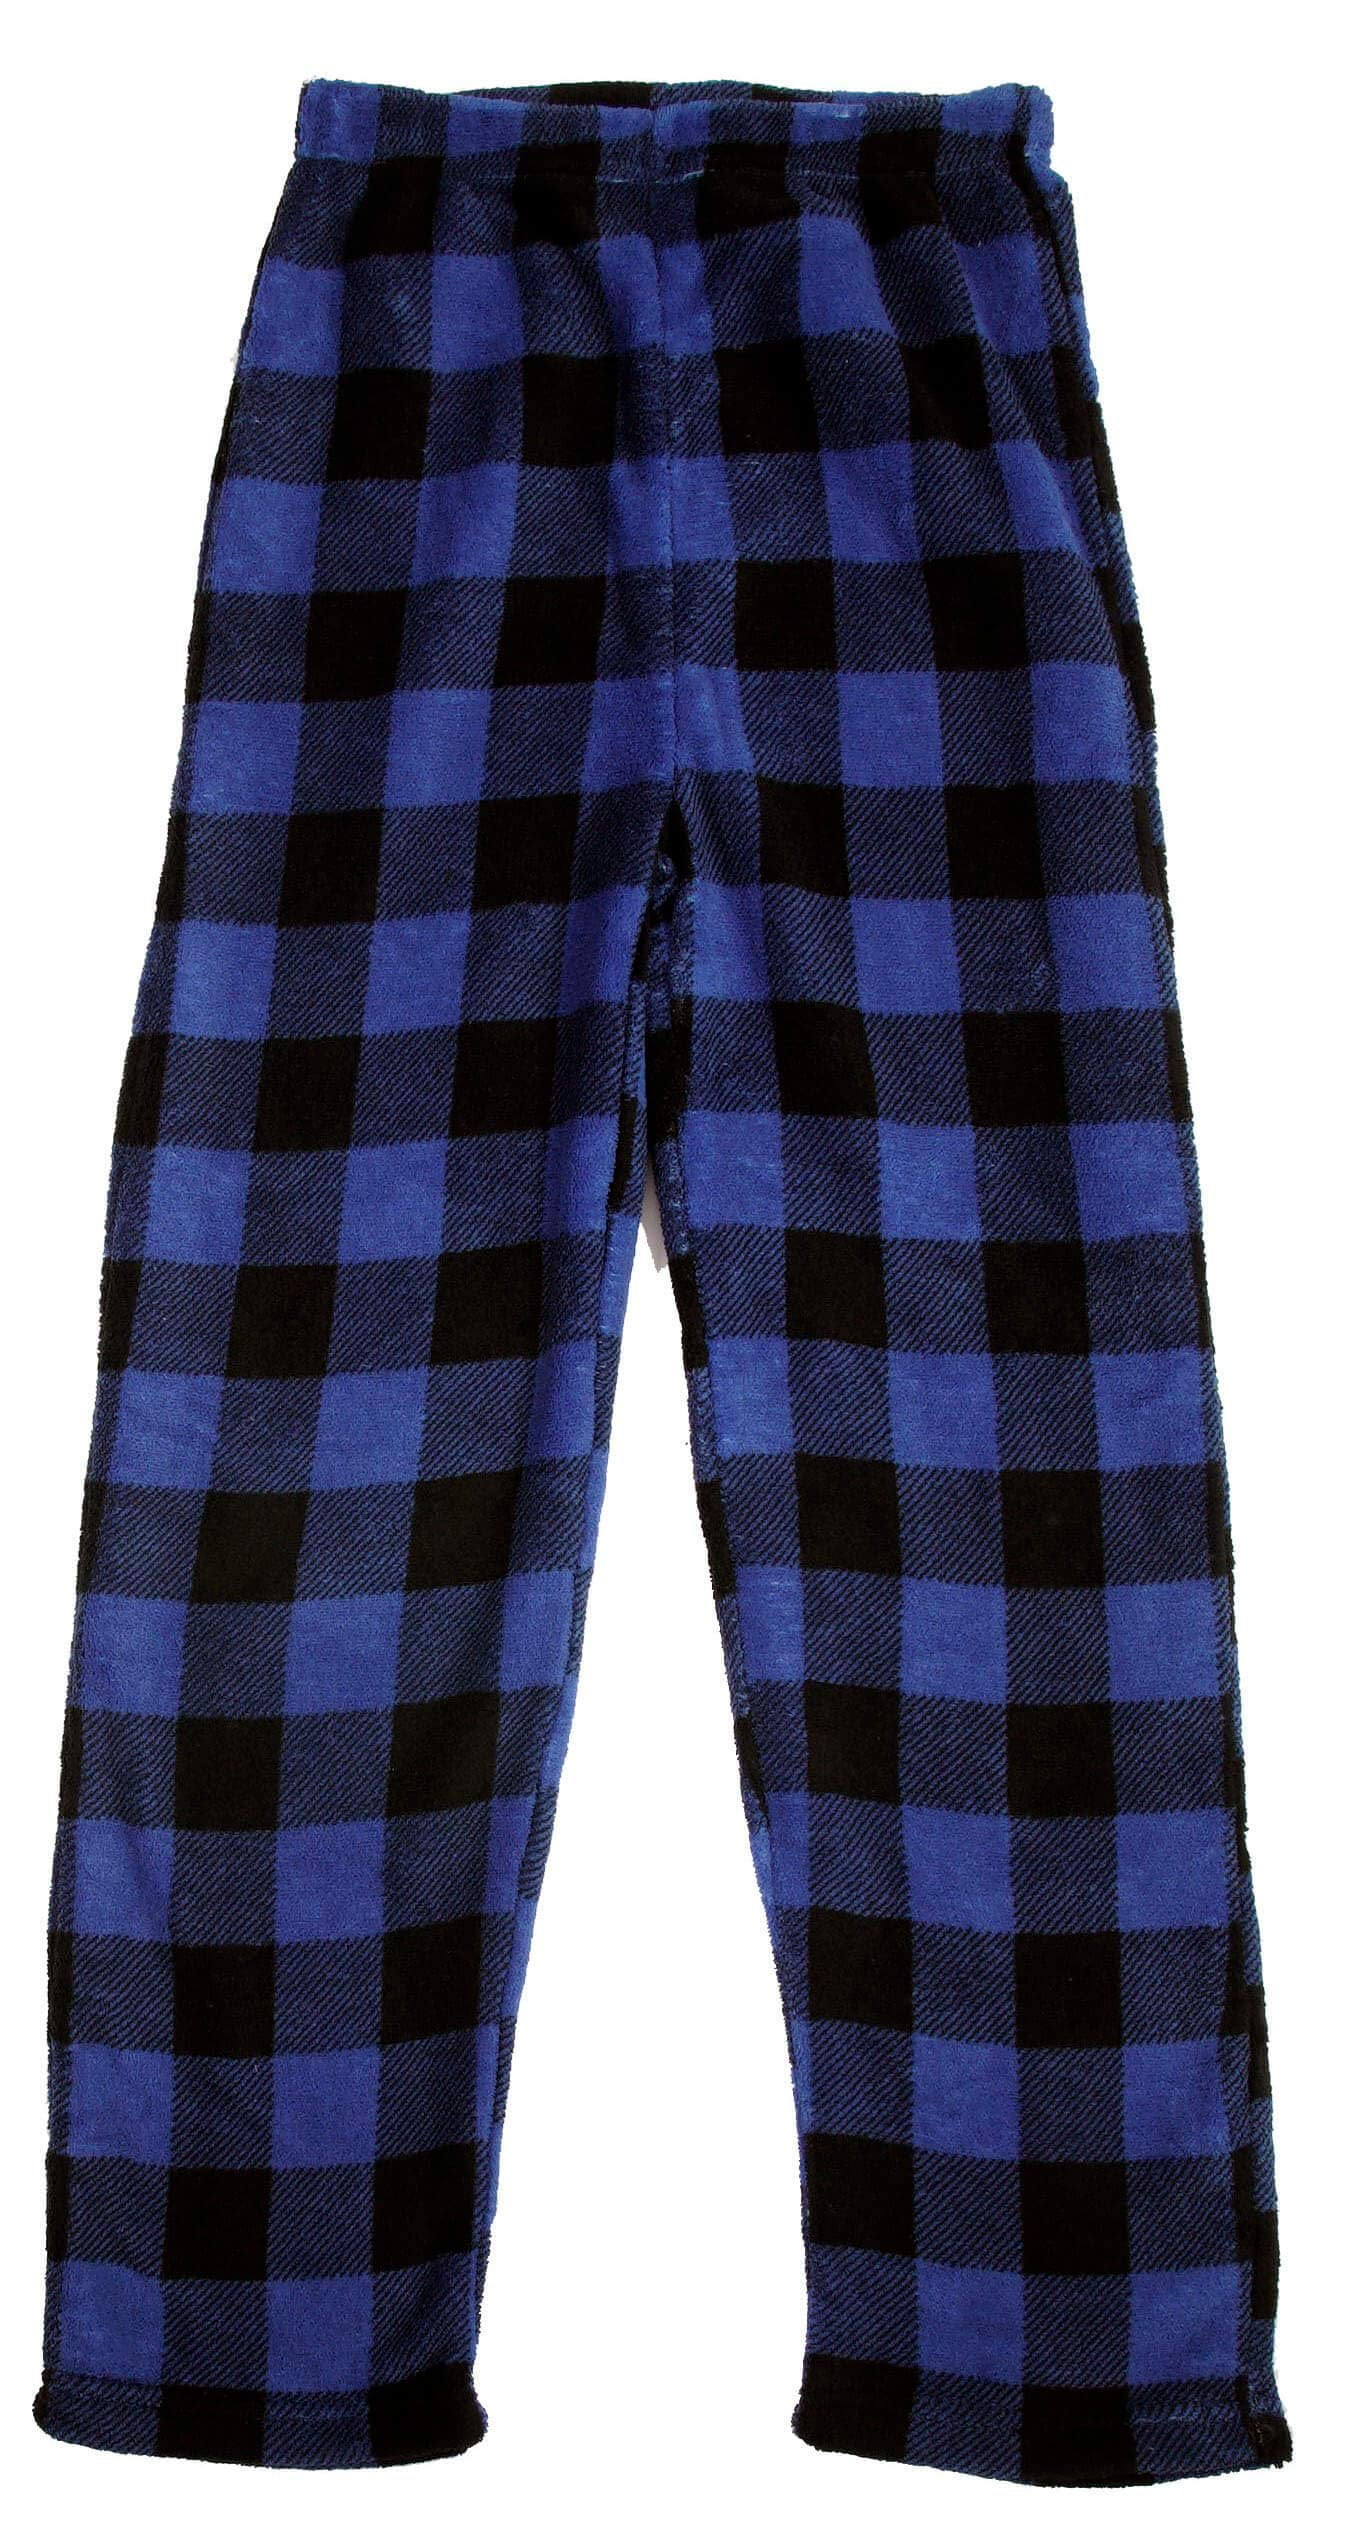 PRINCE OF SLEEP Plush Pajama Pants - Fleece PJs for Boys (Red Buffalo Plaid  Jogger, 14-16 Years) 